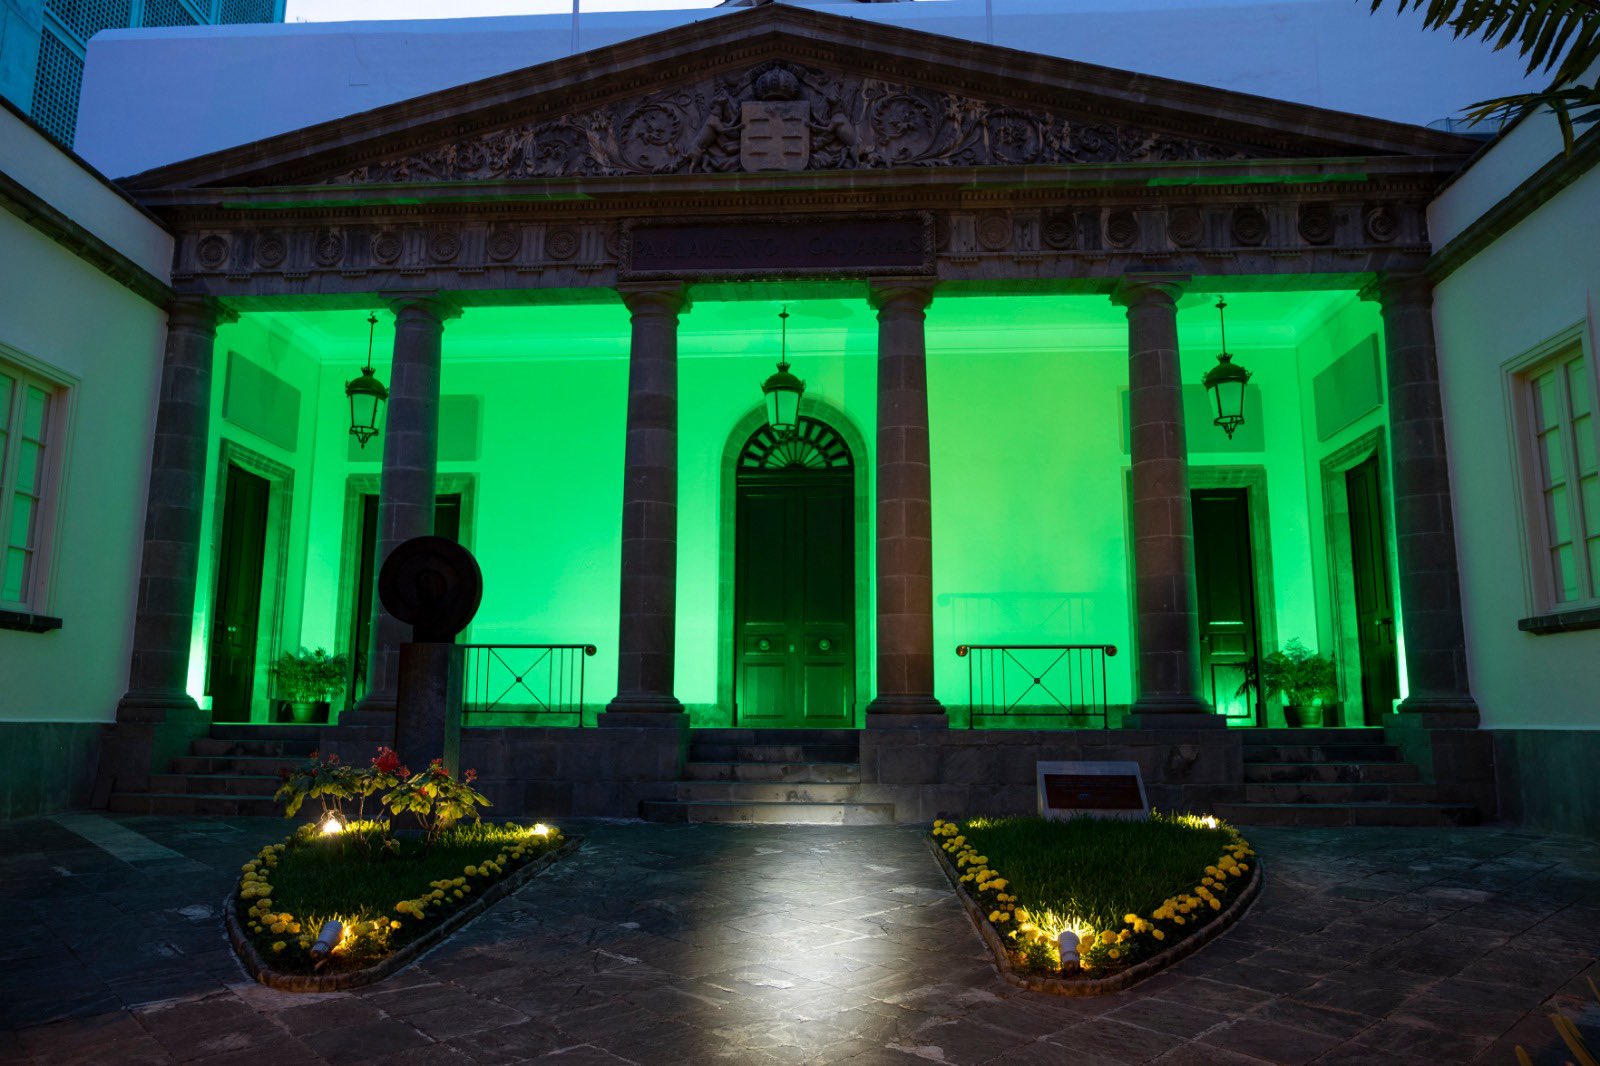 La fachada del Parlamento iluminada de color verde